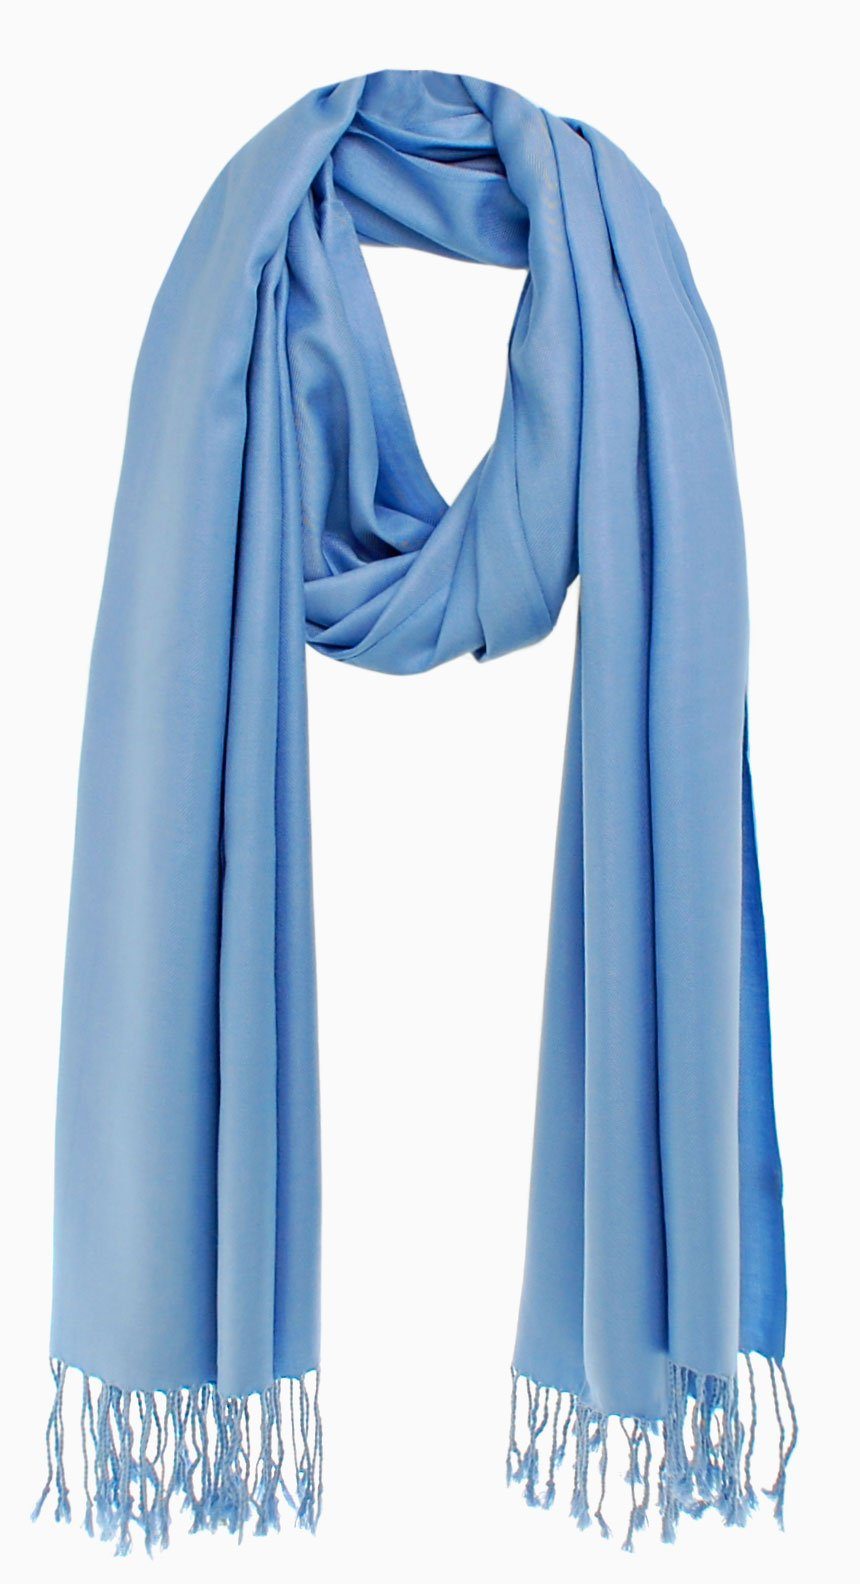 Bovari Schal Pashmina aus glänzend blau wie - / Damen-Schal XL - 200x70 weich Seide cm wie Premium Viskose Kaschmir -, 100% himmelblau